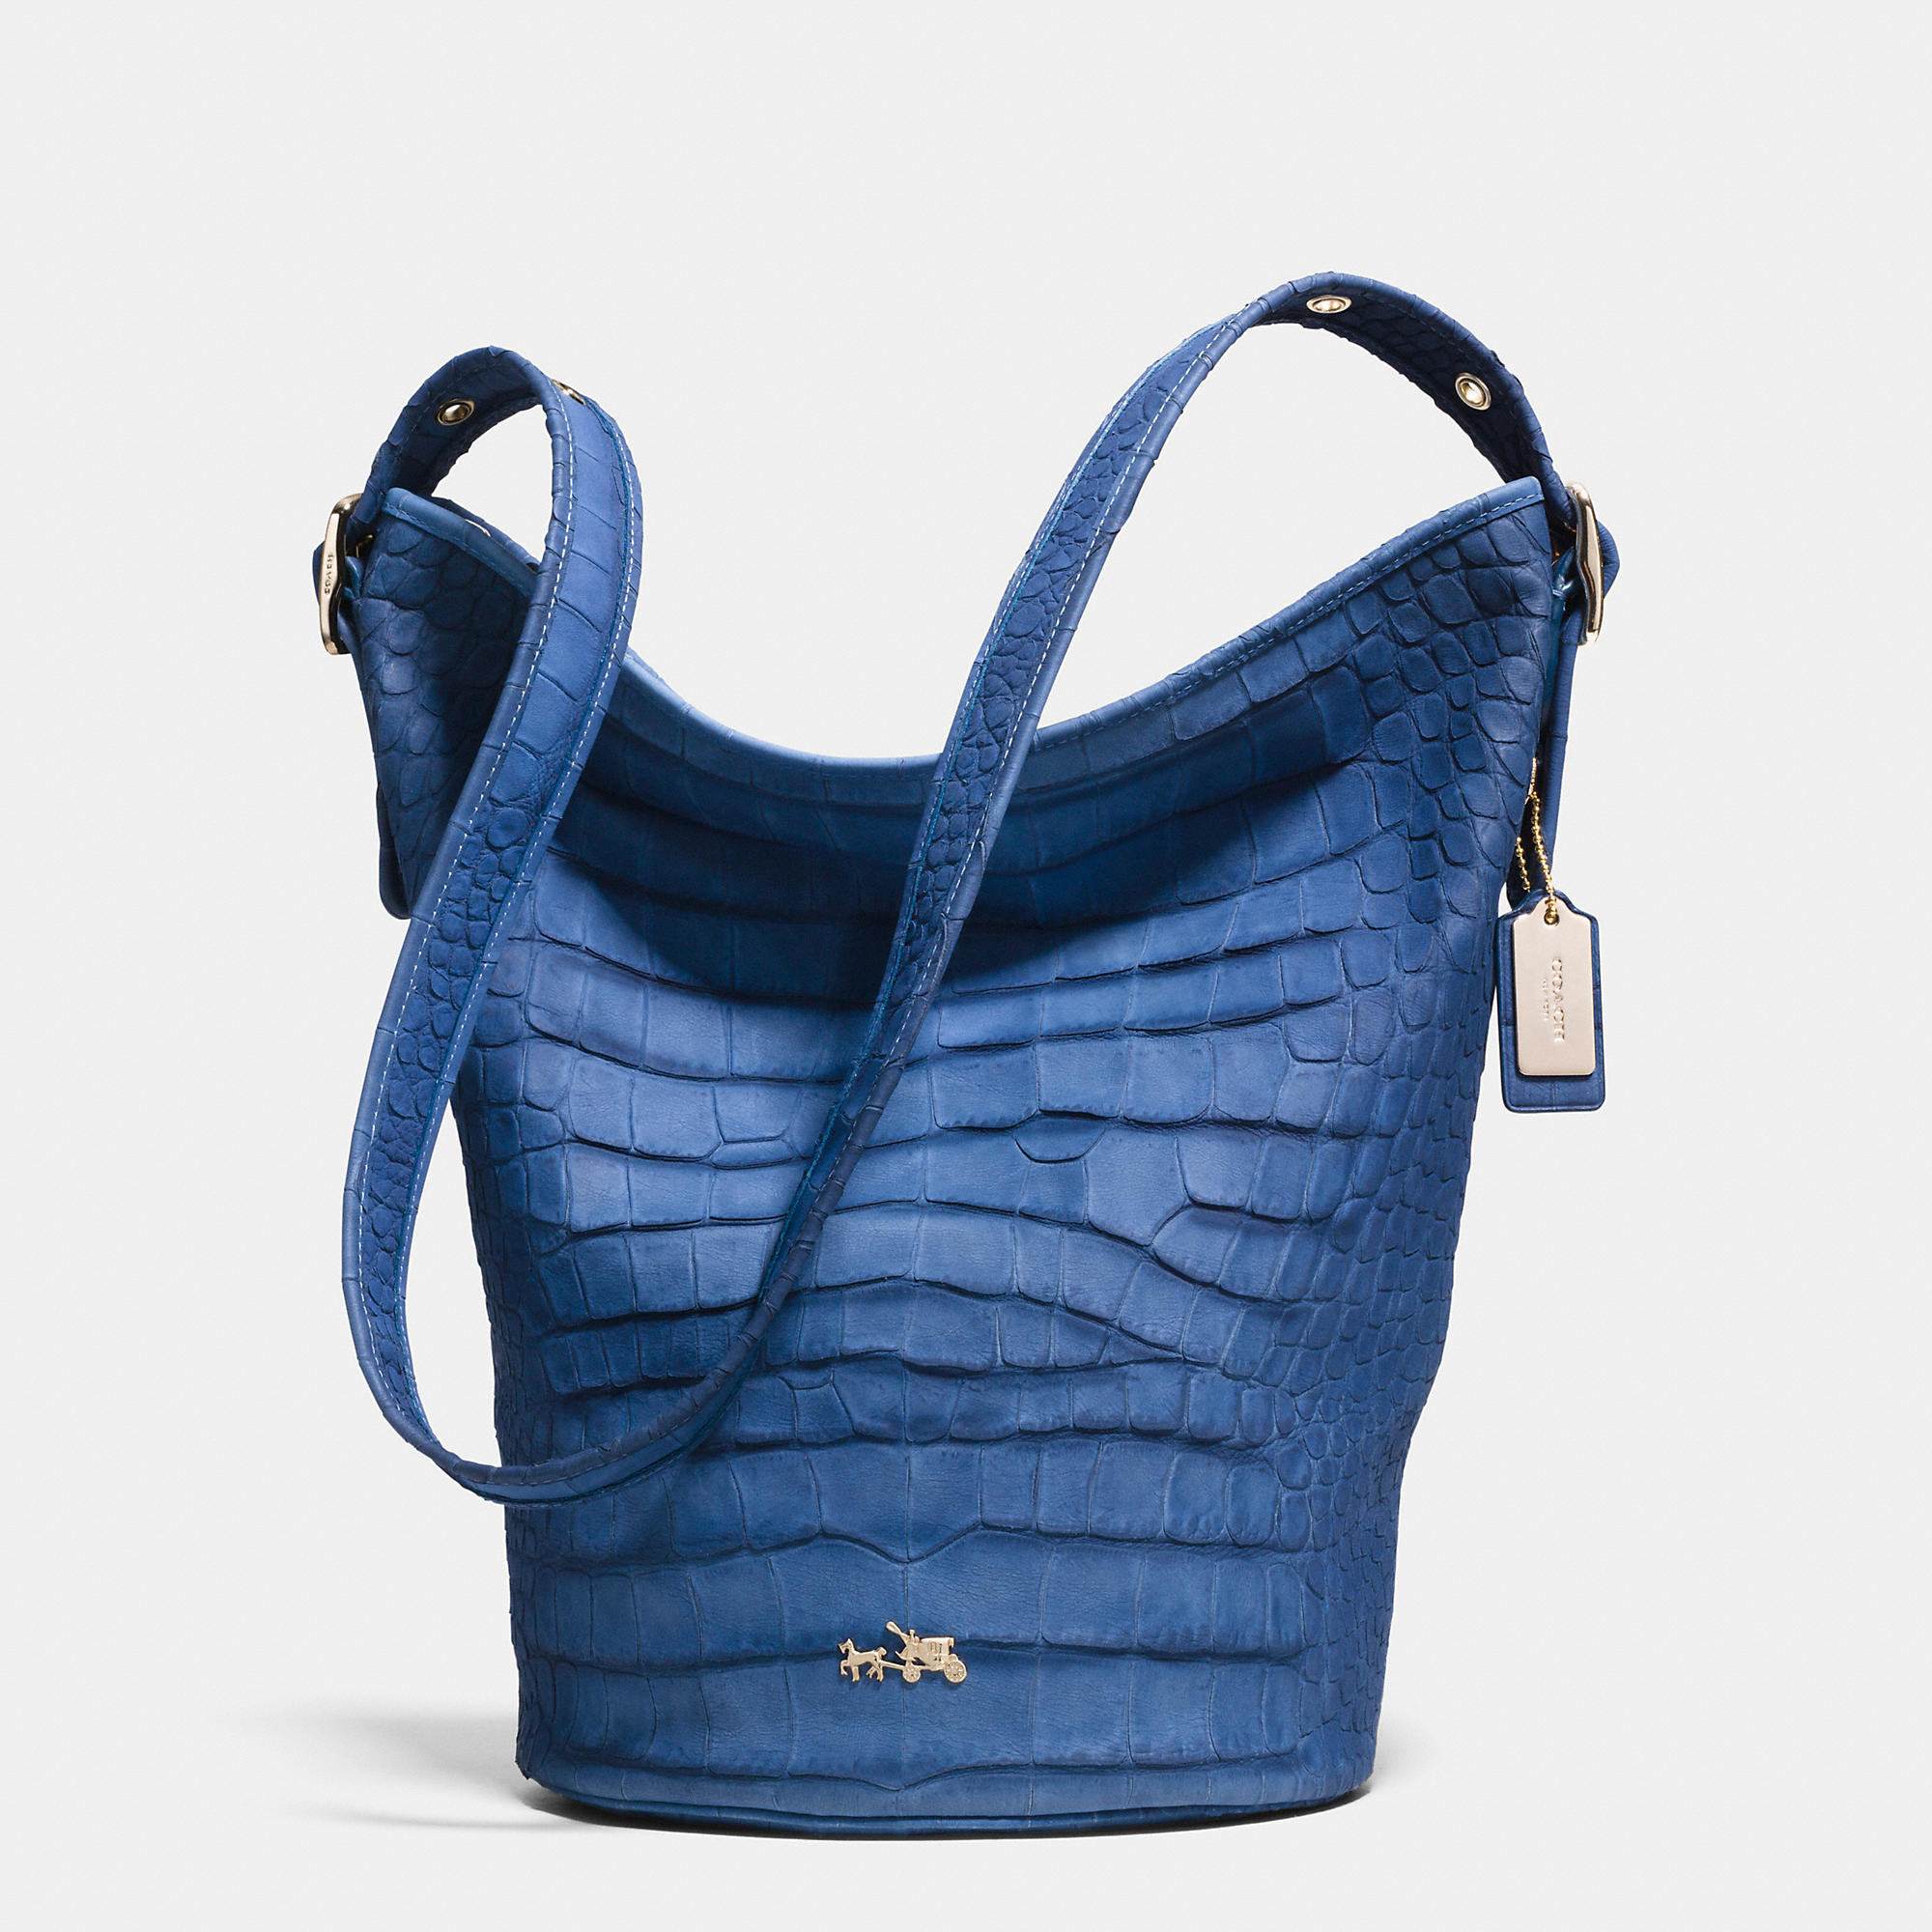 Coach Leather Shoulder bag Handbag Purse Denim Blue F17116 NWT $358